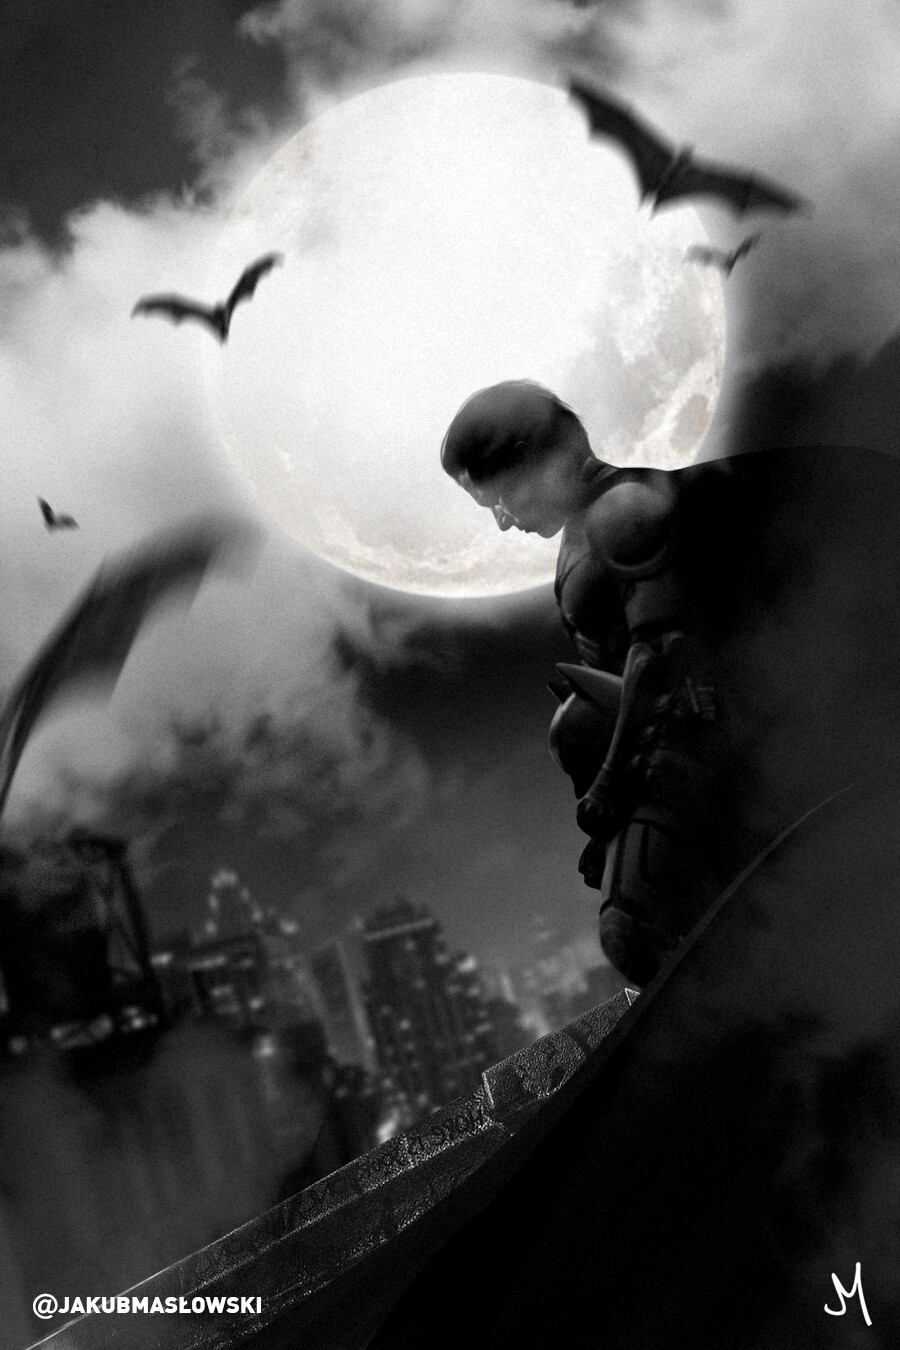 Jakub Masłowski - The Dark Knight Rises